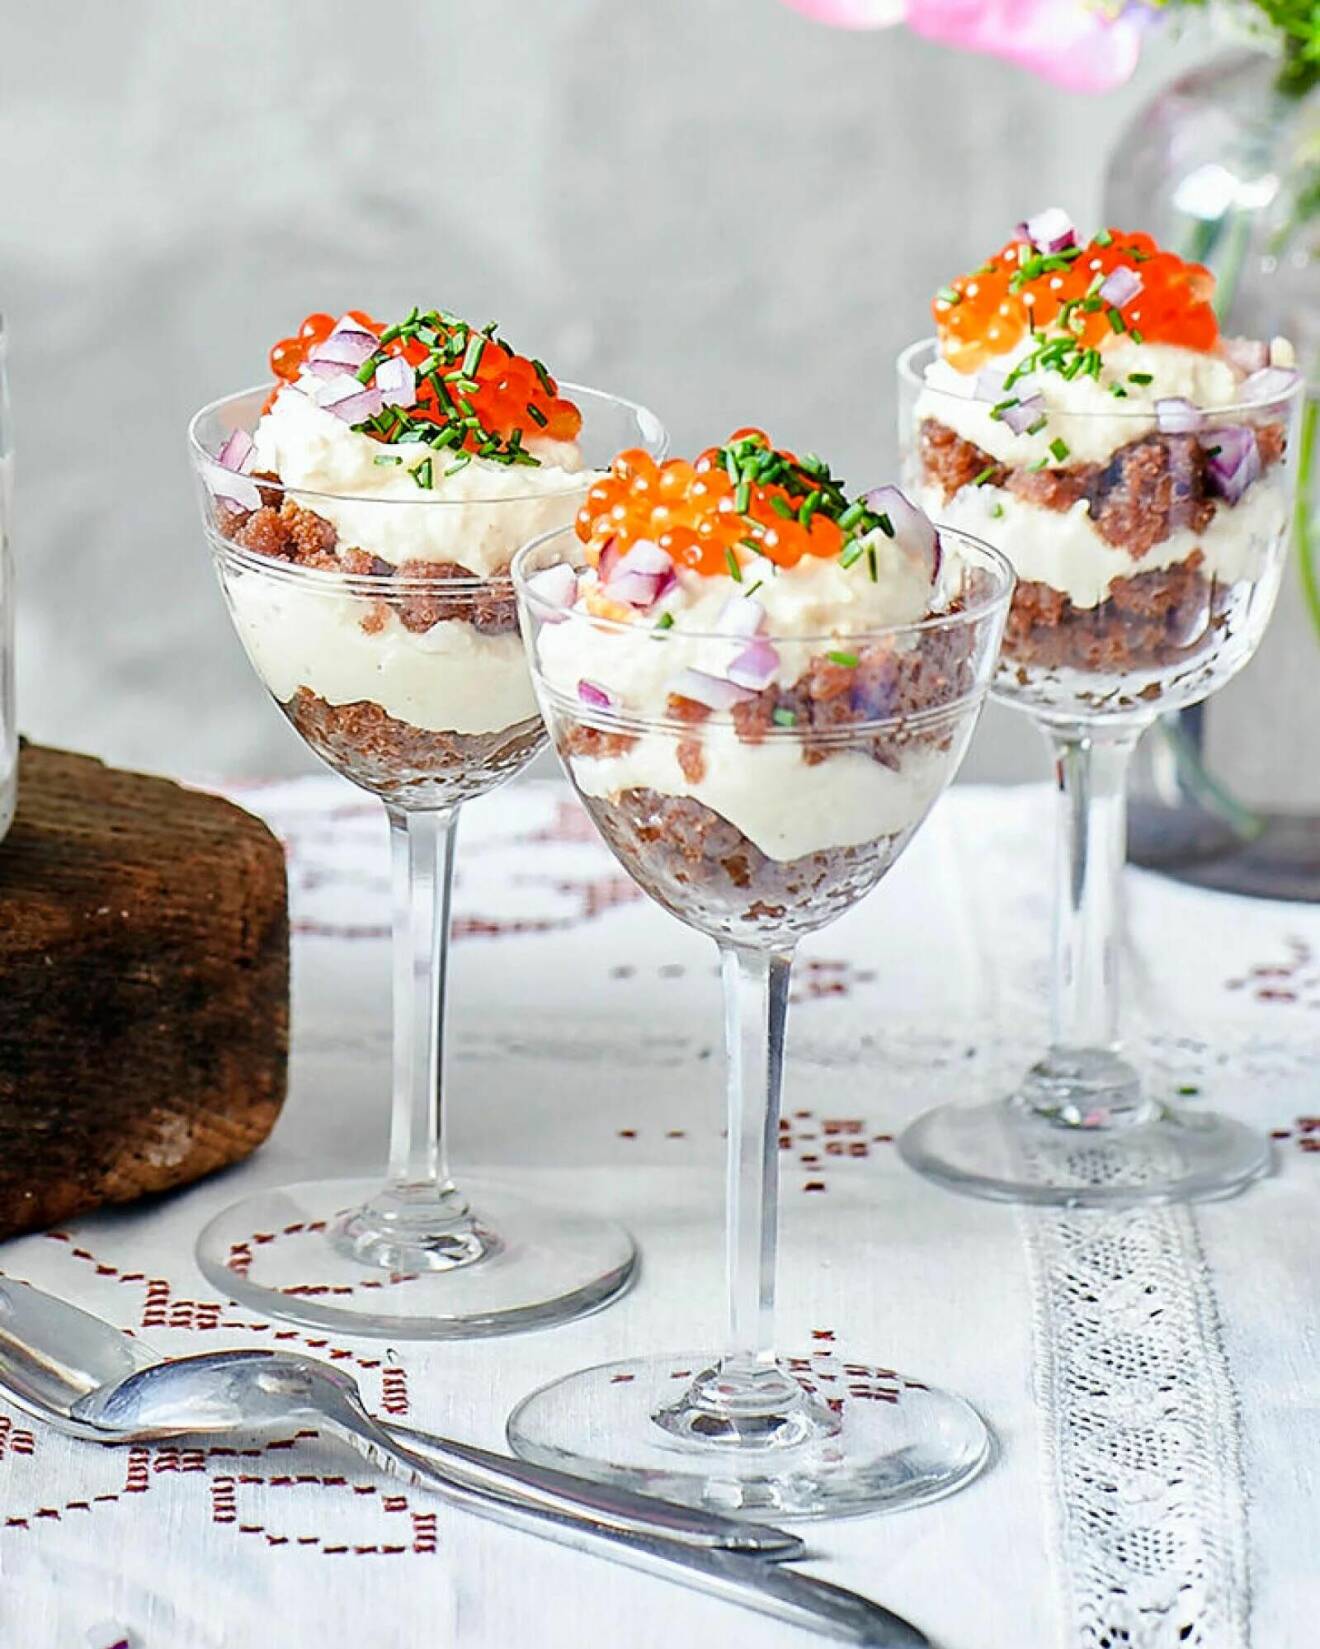 Servera cheesecake direkt i glas – med Västerbottenskräm och regnbågslaxrom